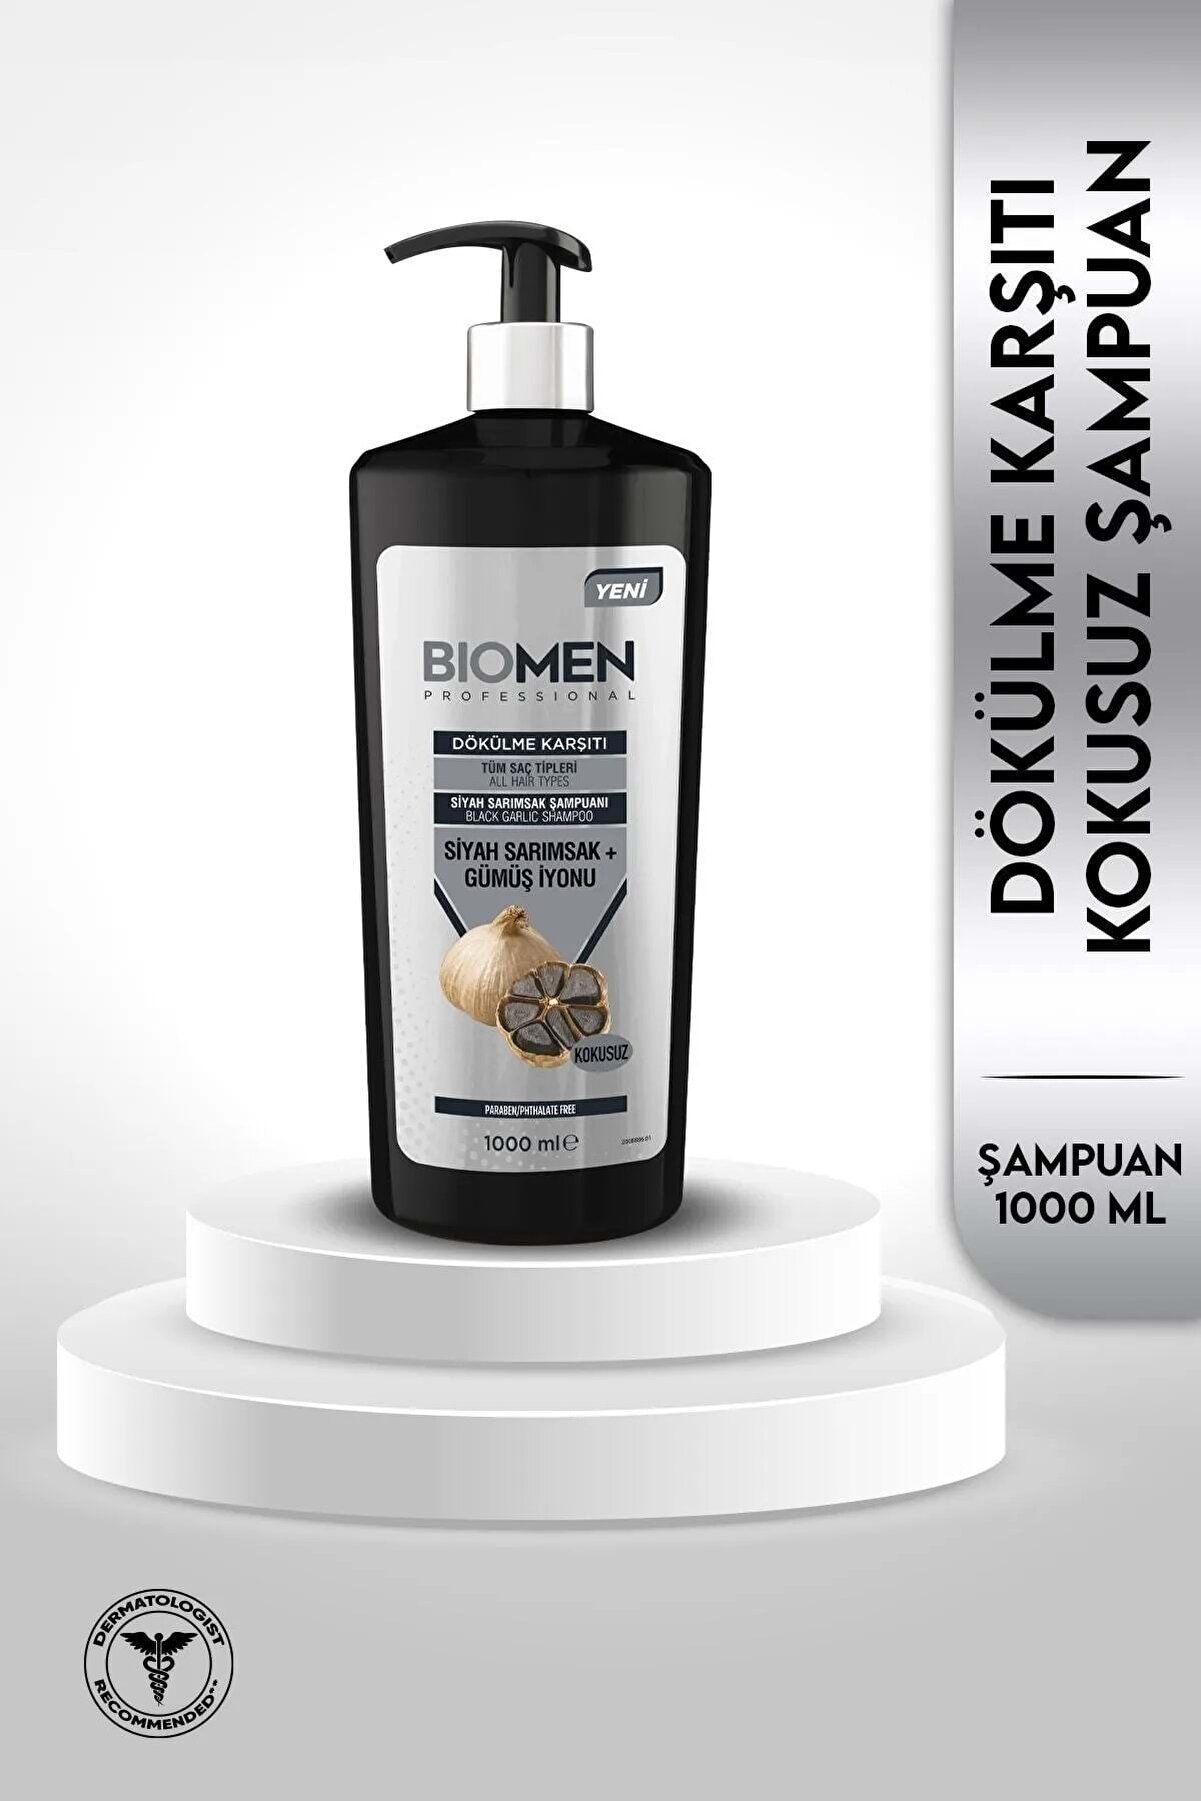 Biomen Professional Siyah Sarımsak & Gümüş I?yonu Dökülme Karşıtı Şampuan 1000ml